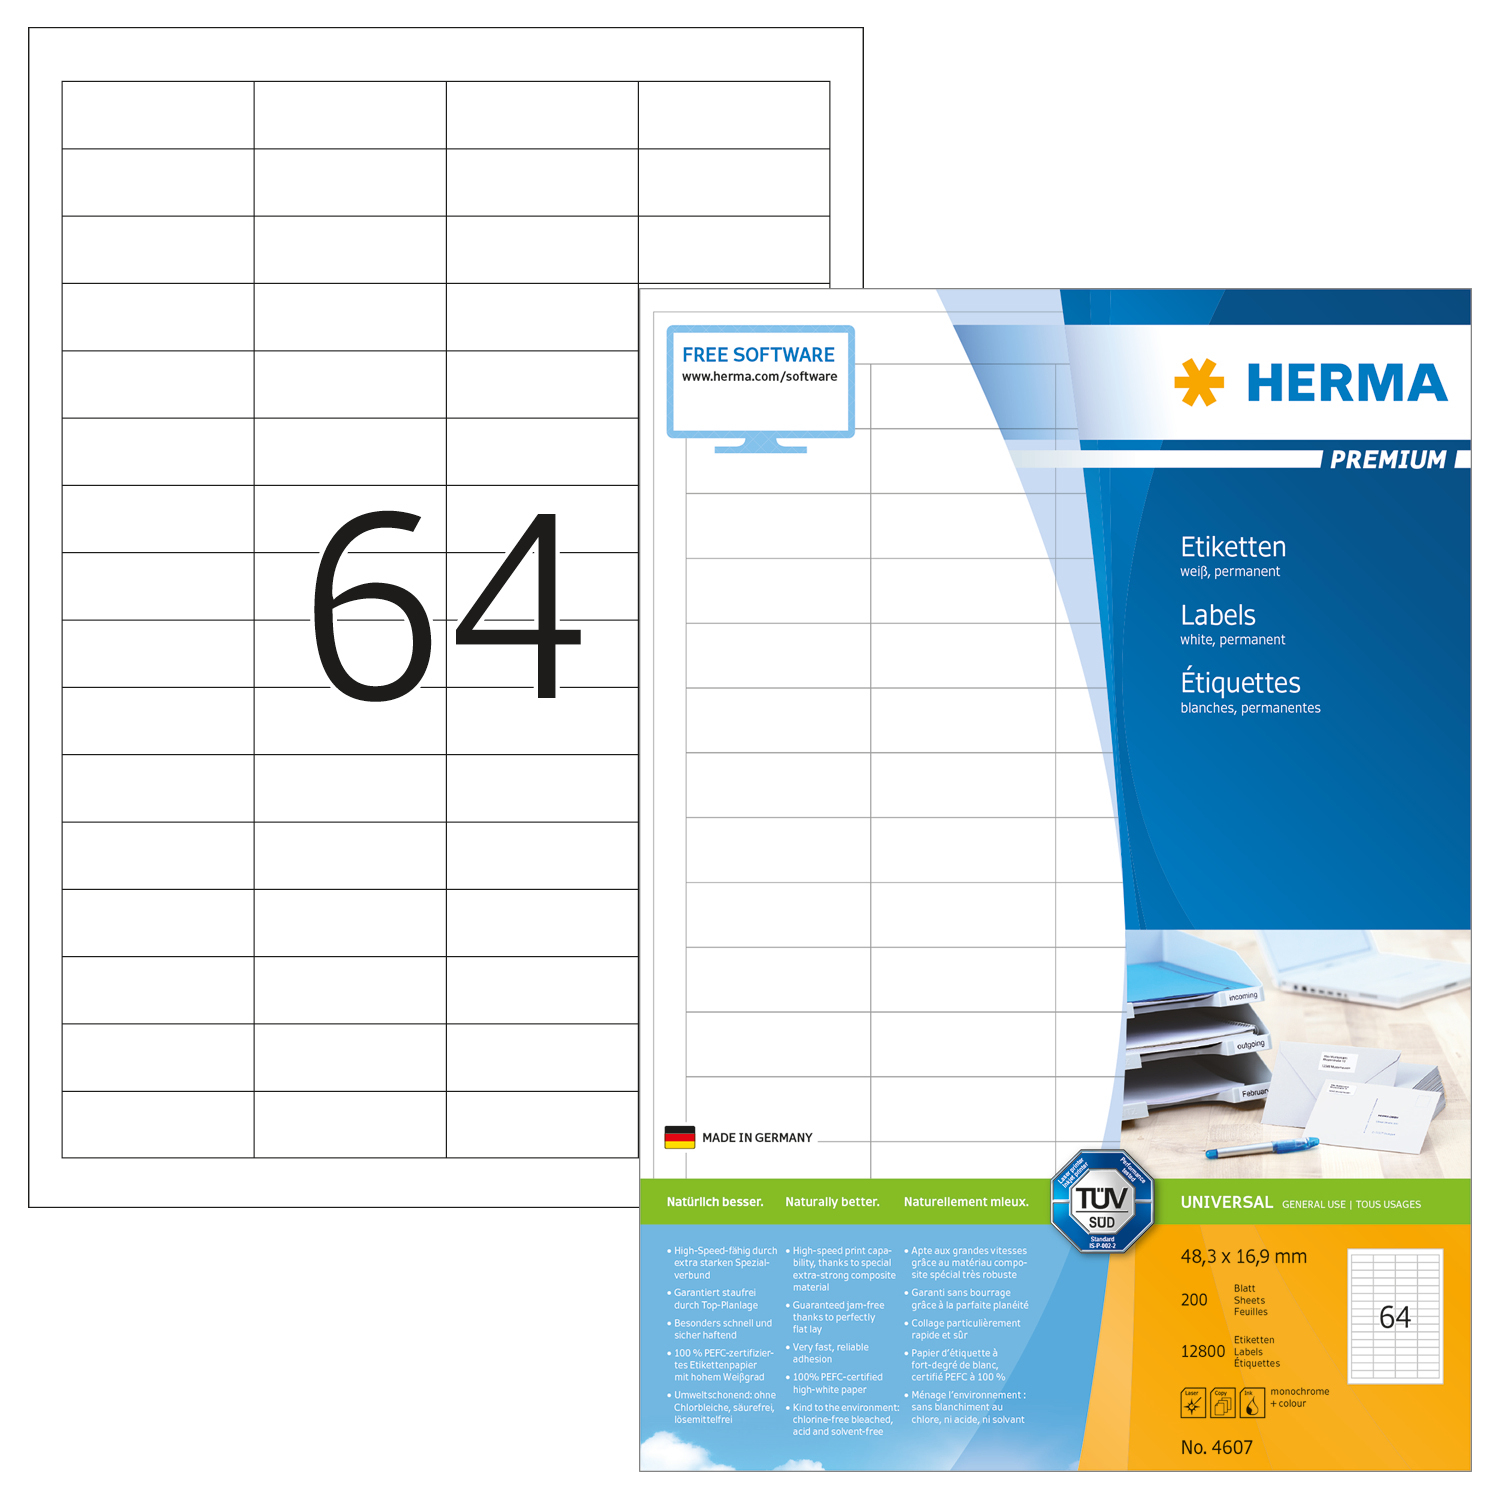 HERMA Etiquettes Premium 48,3×16,9mm 4607 blanc 12800 pcs.